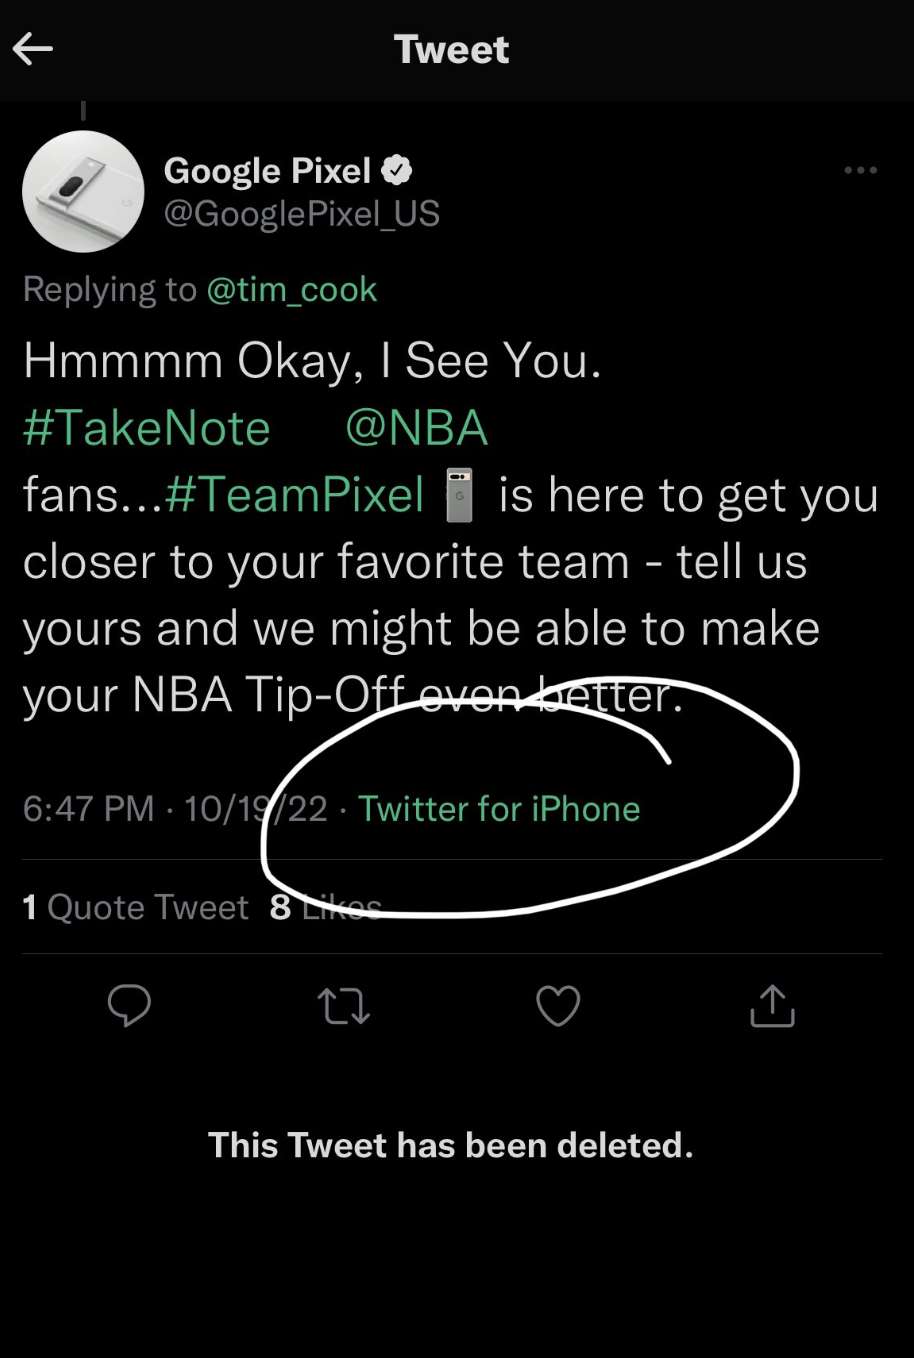 La imagen es un tuit de cuando Google tuiteó accidentalmente desde un iPhone mientras promocionaba un dispositivo Pixel.